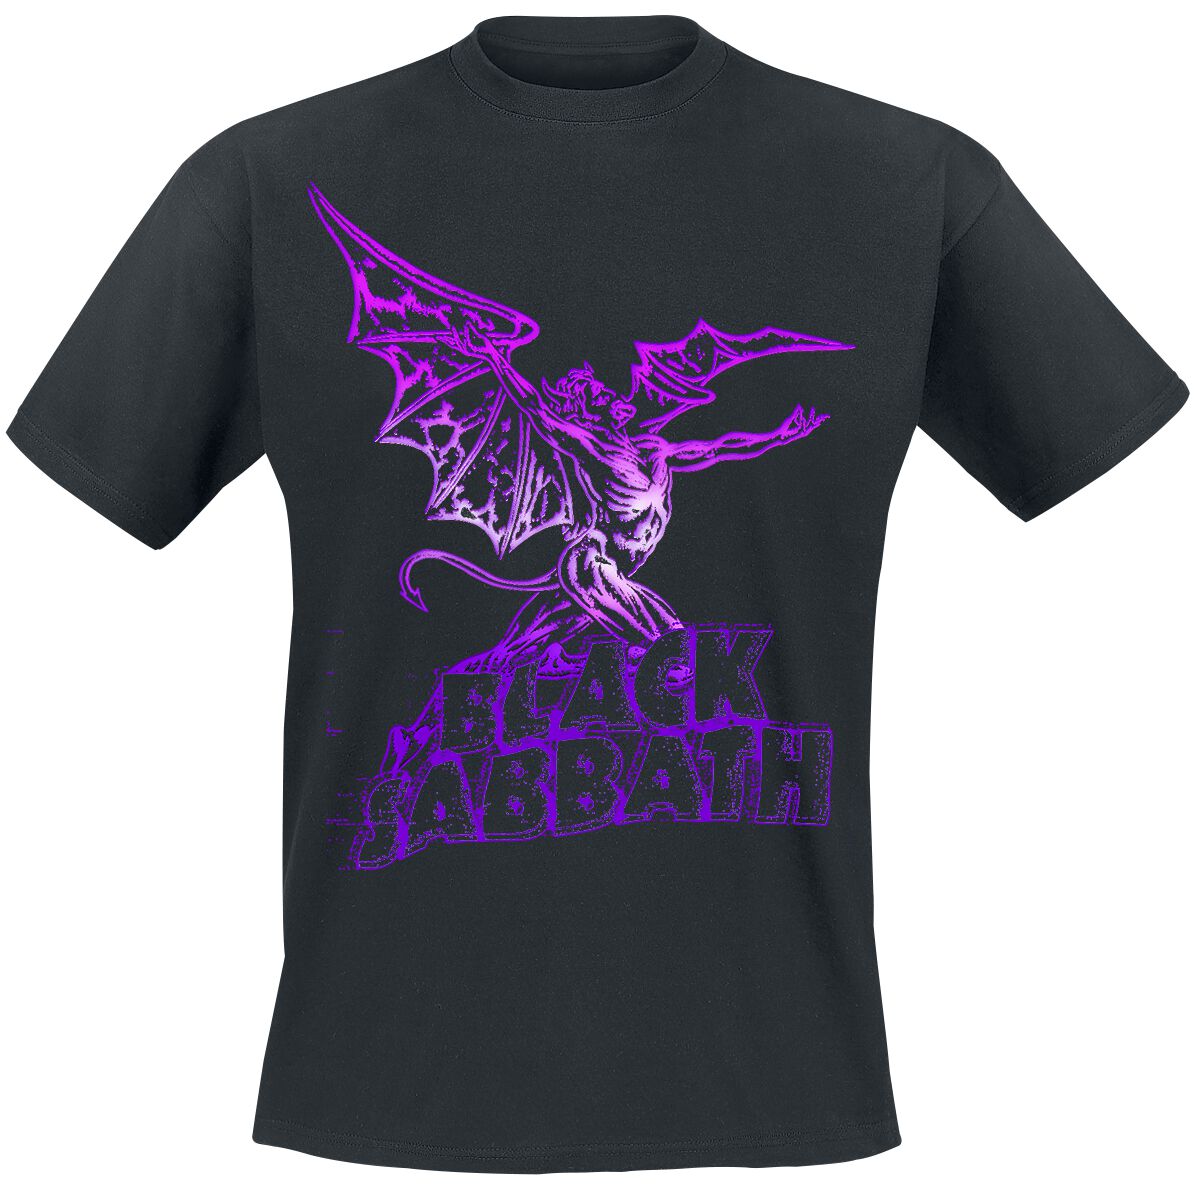 Black Sabbath T-Shirt - Gradiant Demon - S bis 3XL - für Männer - Größe M - schwarz  - Lizenziertes Merchandise!